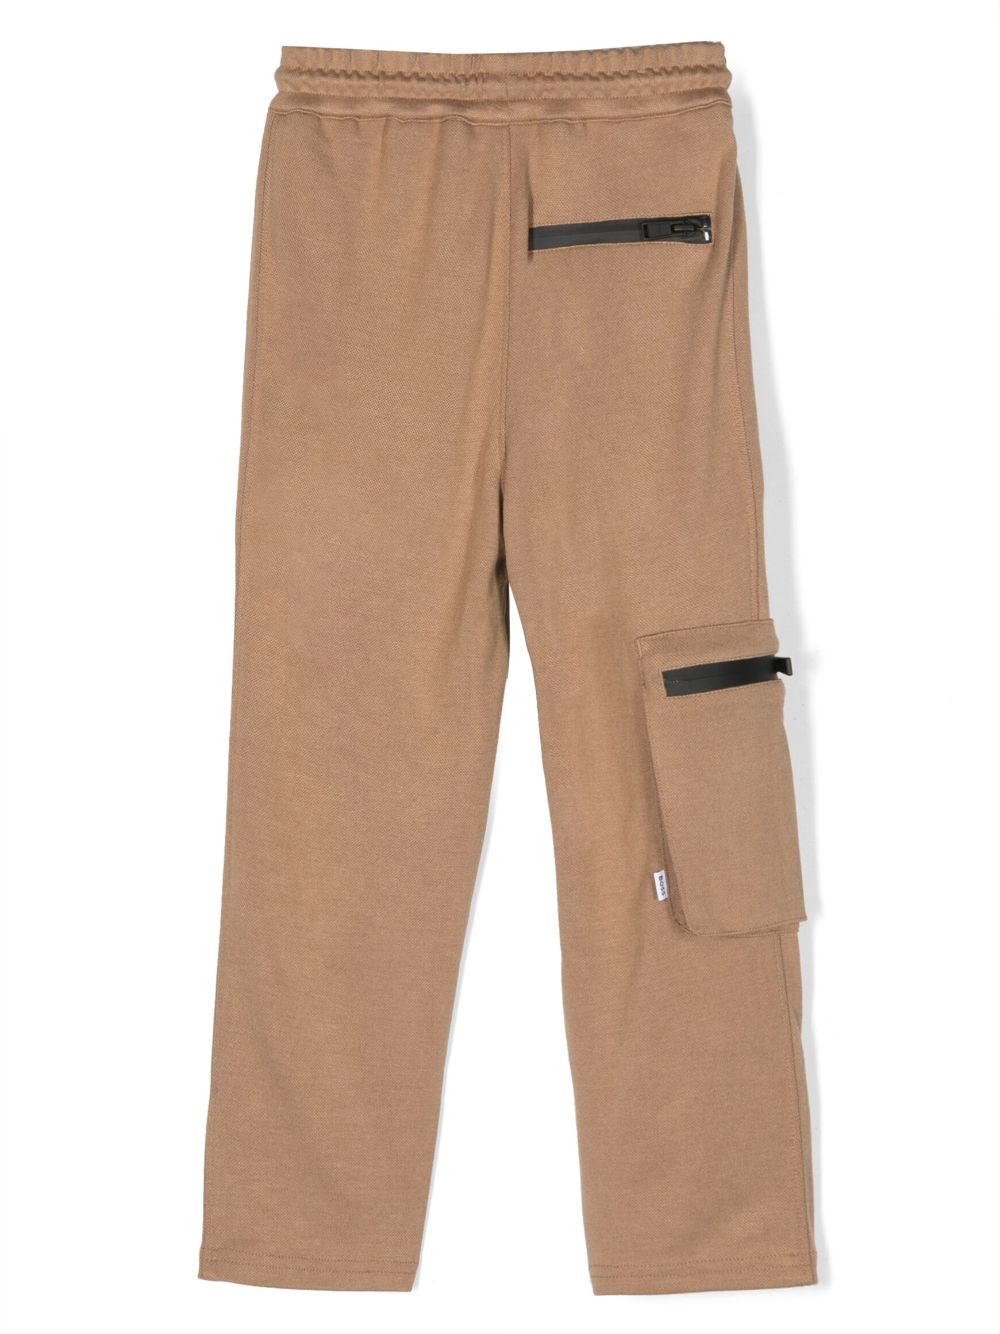 Pantalon enfant beige, imprimé latéral, trois poches, taille élastiquée